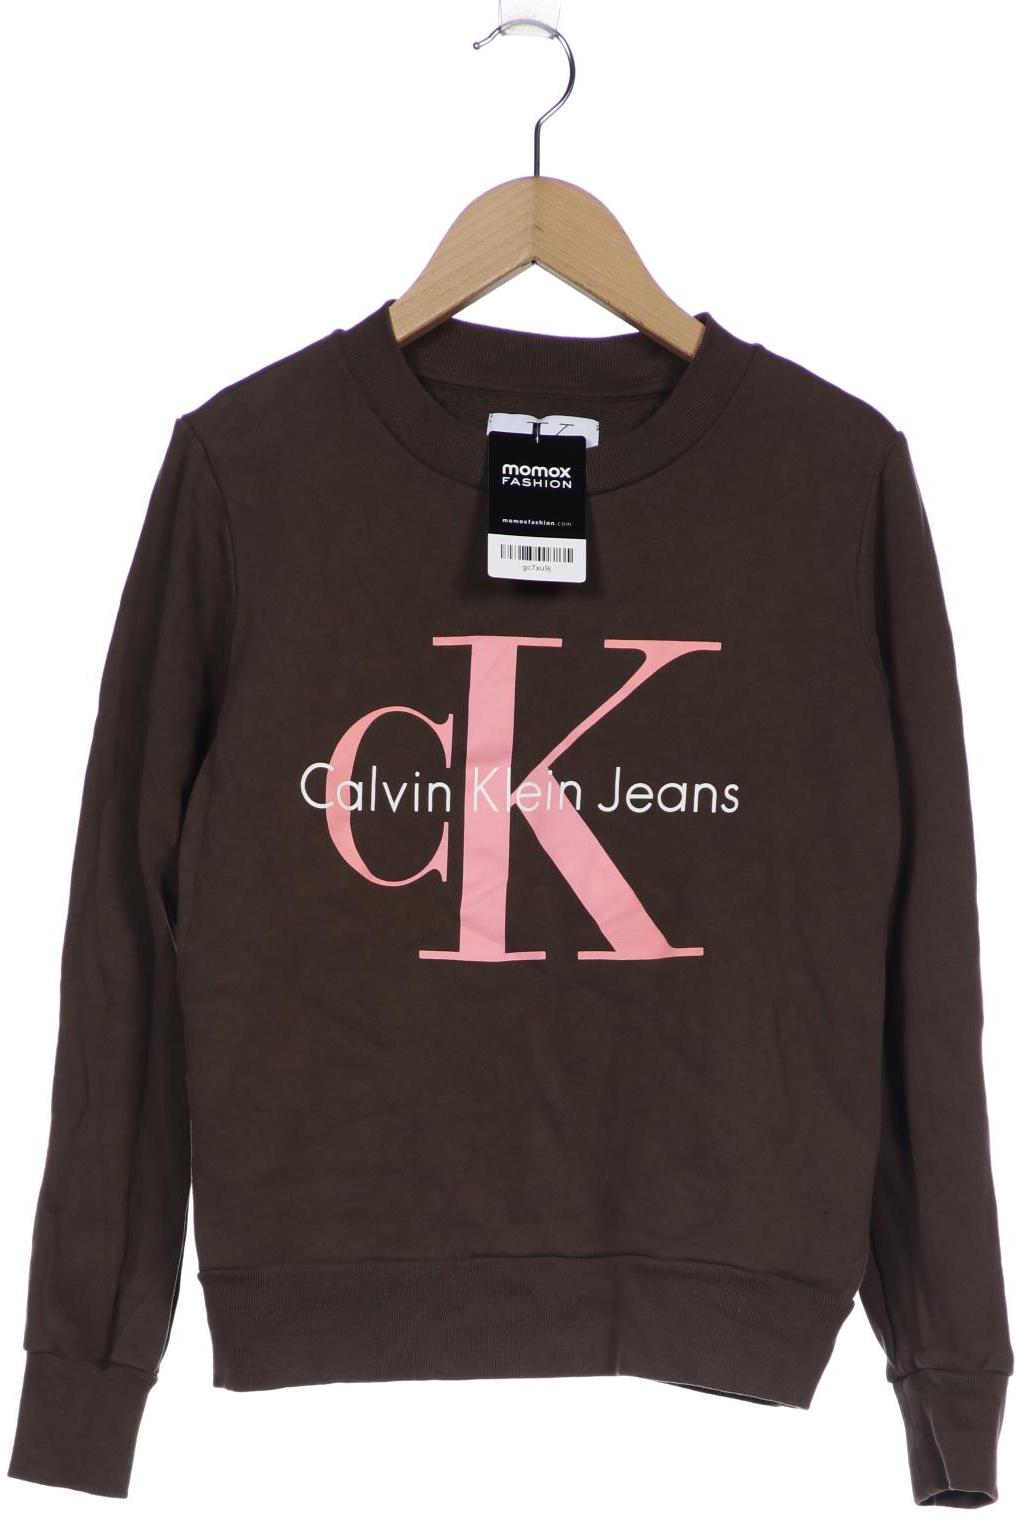 Calvin Klein Jeans Damen Sweatshirt, braun von Calvin Klein Jeans